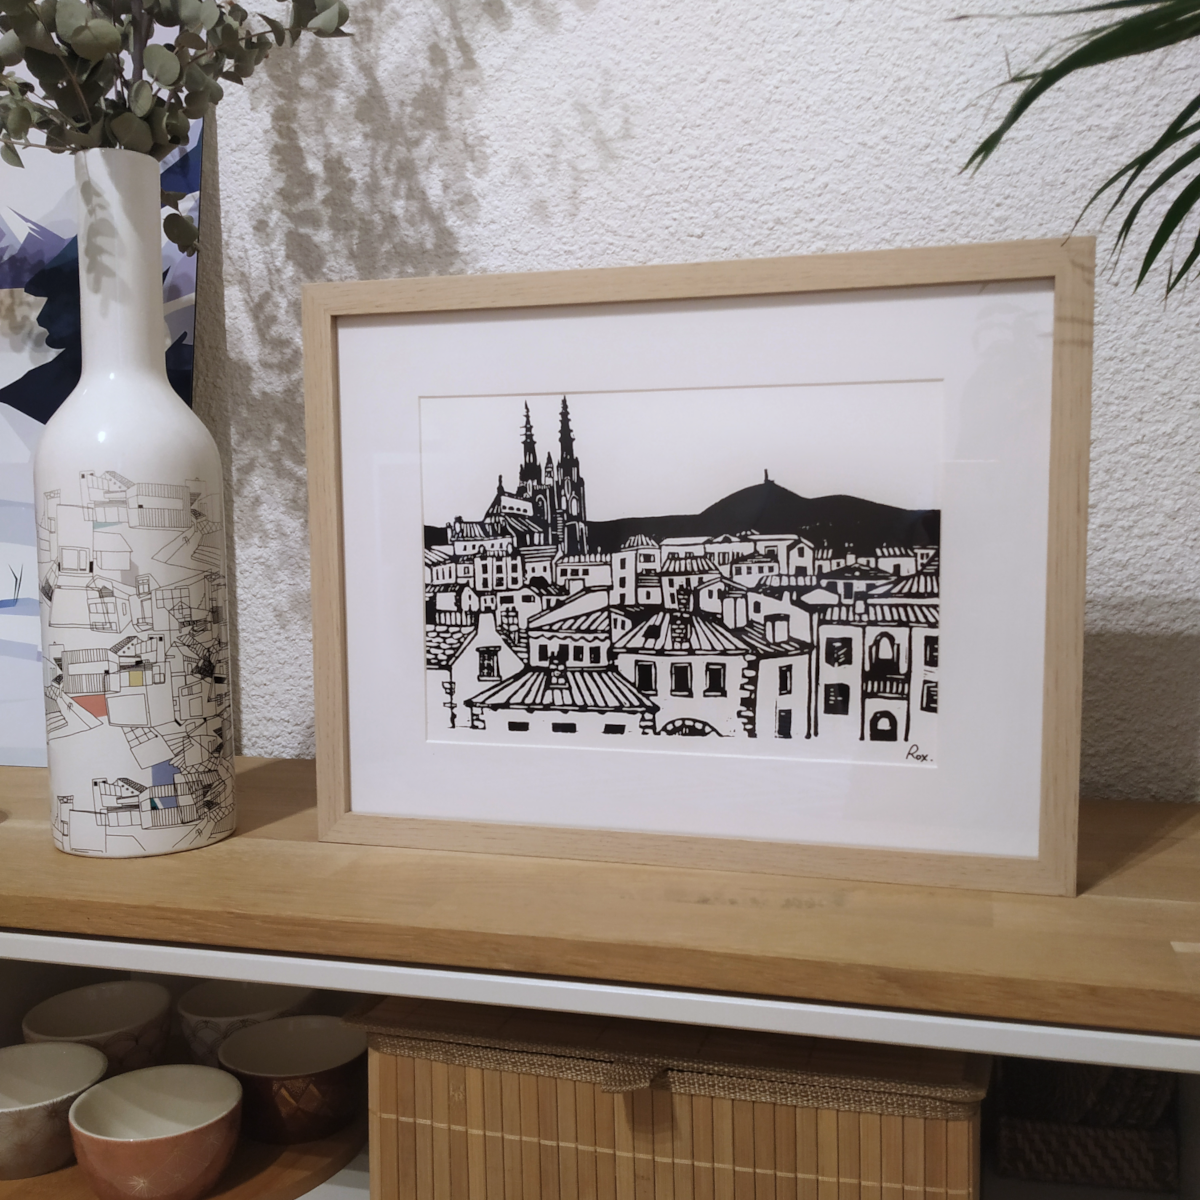 Représentation d'une vue de Clermont-Ferrand réalisée en linogravure et imprimée à l'encre sur papier.